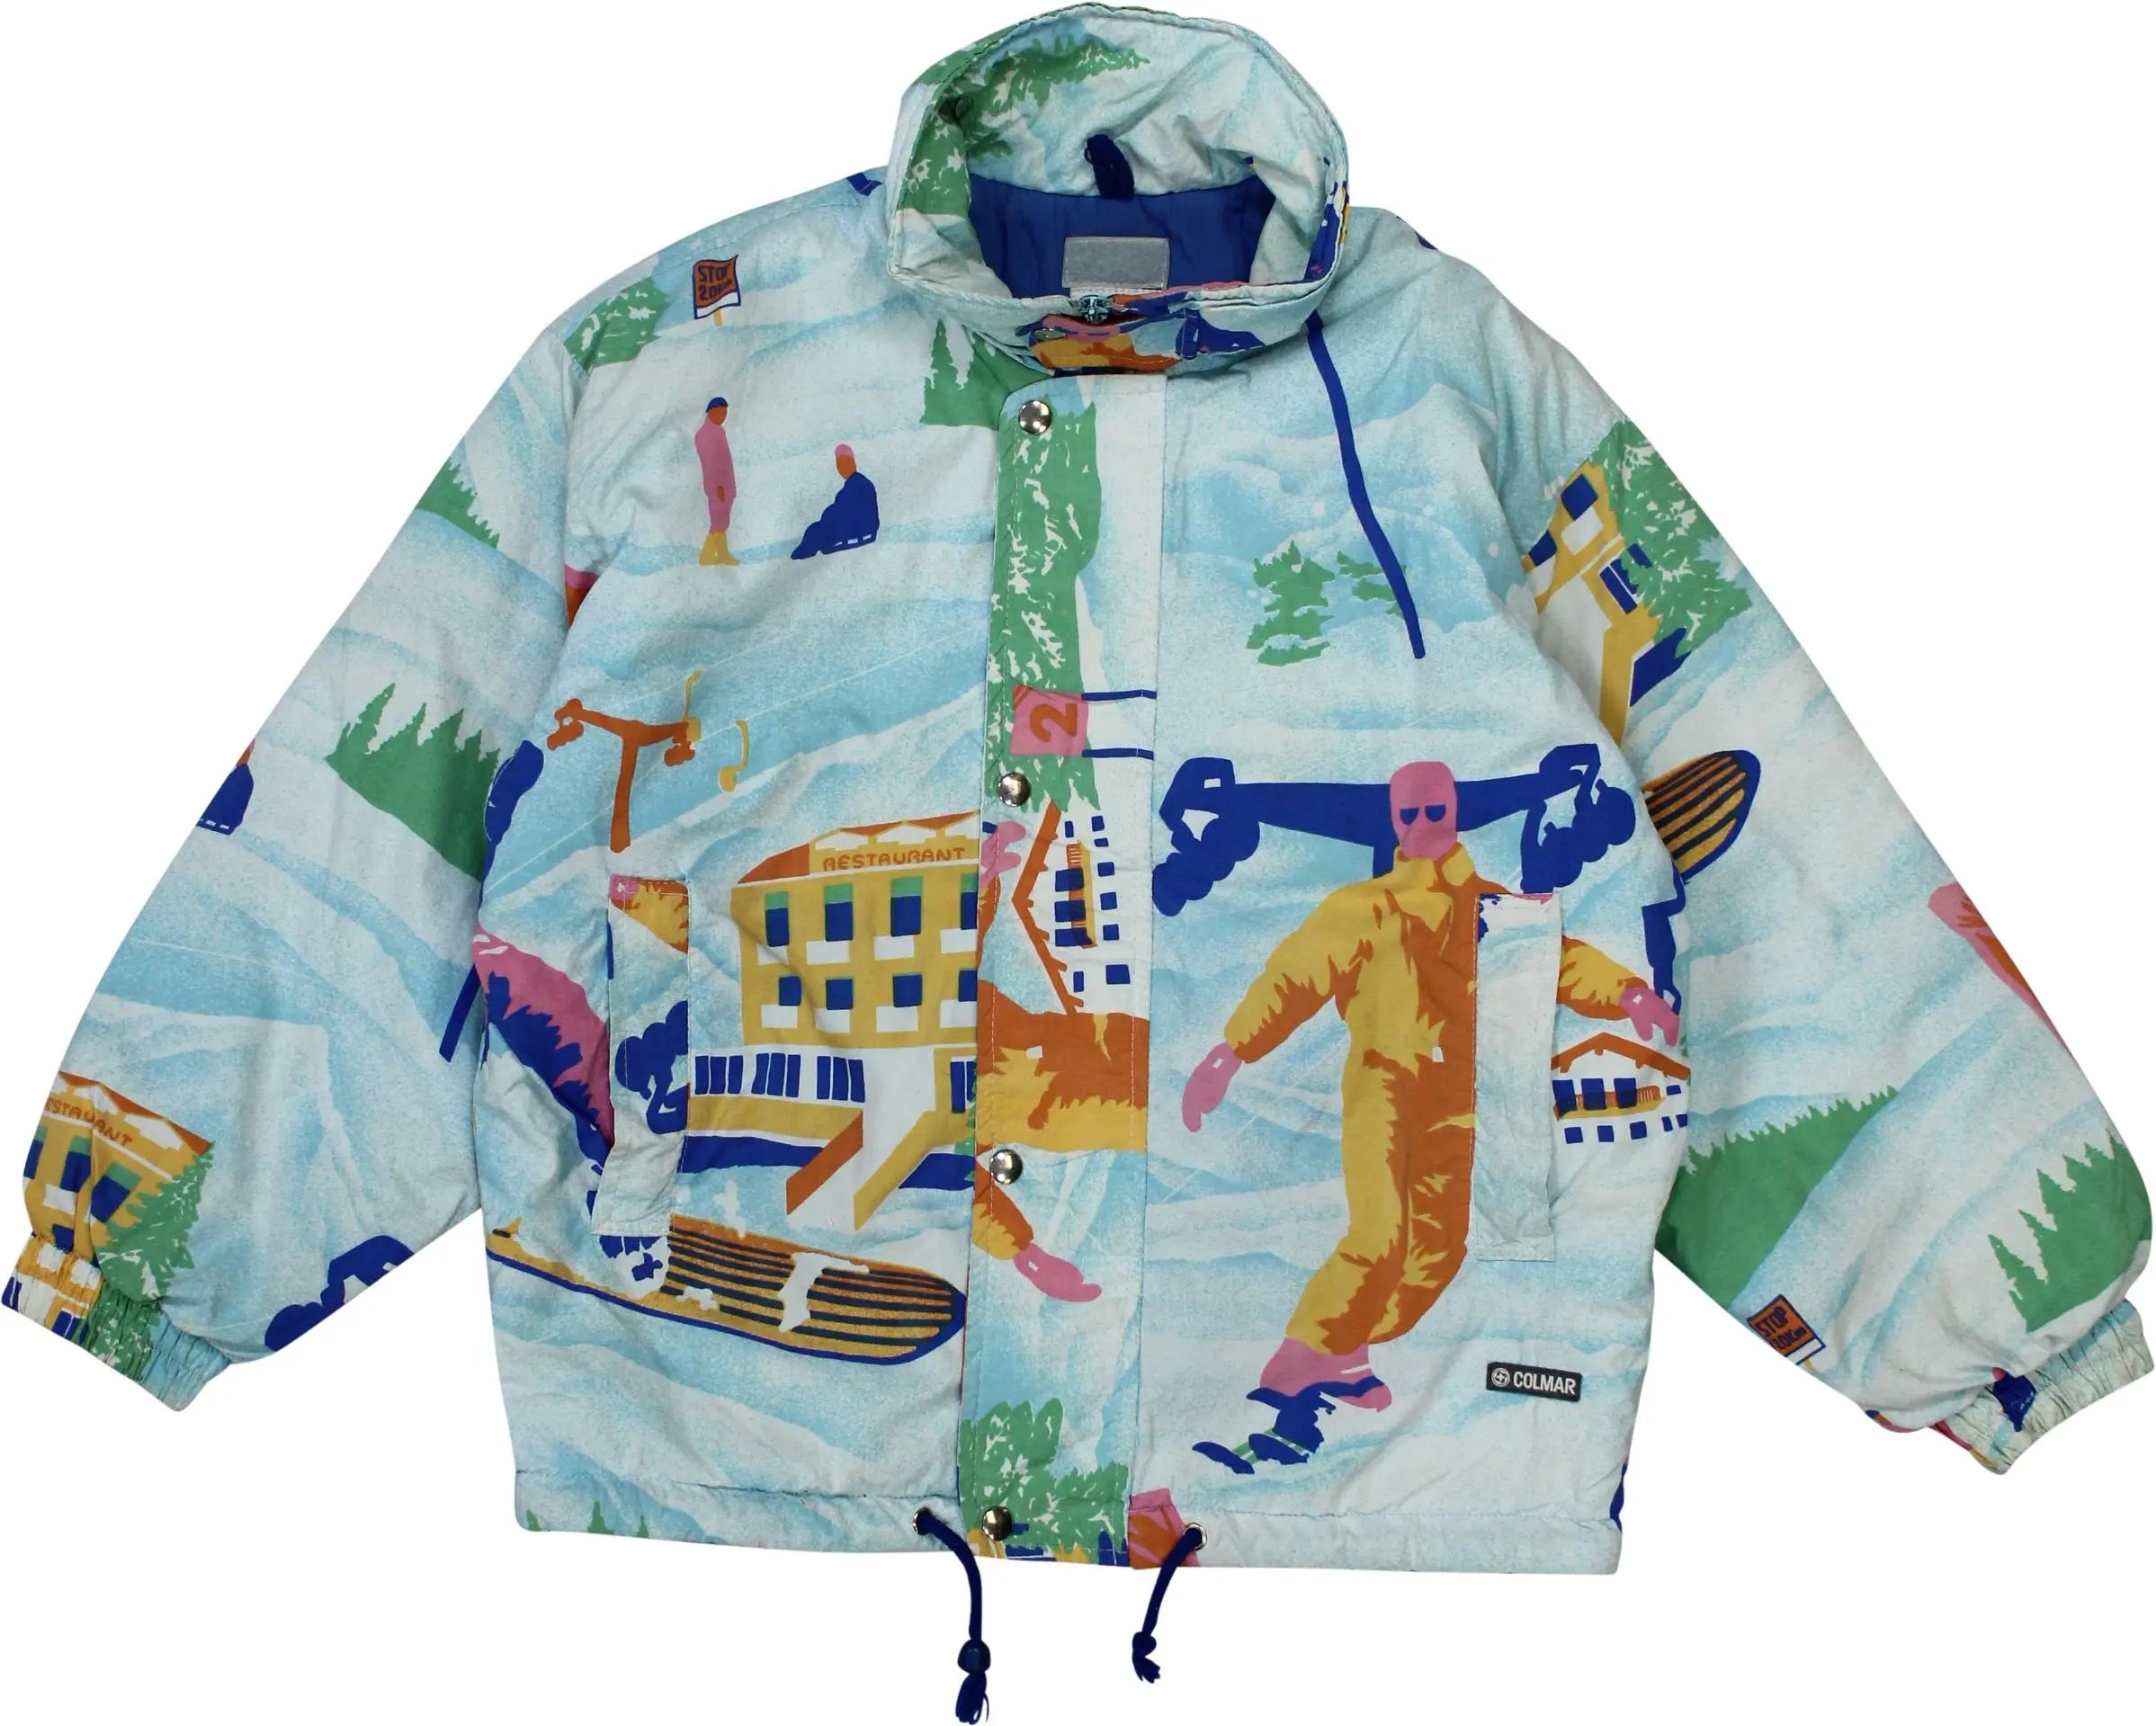 Colmar - Blue Ski Jacket- ThriftTale.com - Vintage and second handclothing